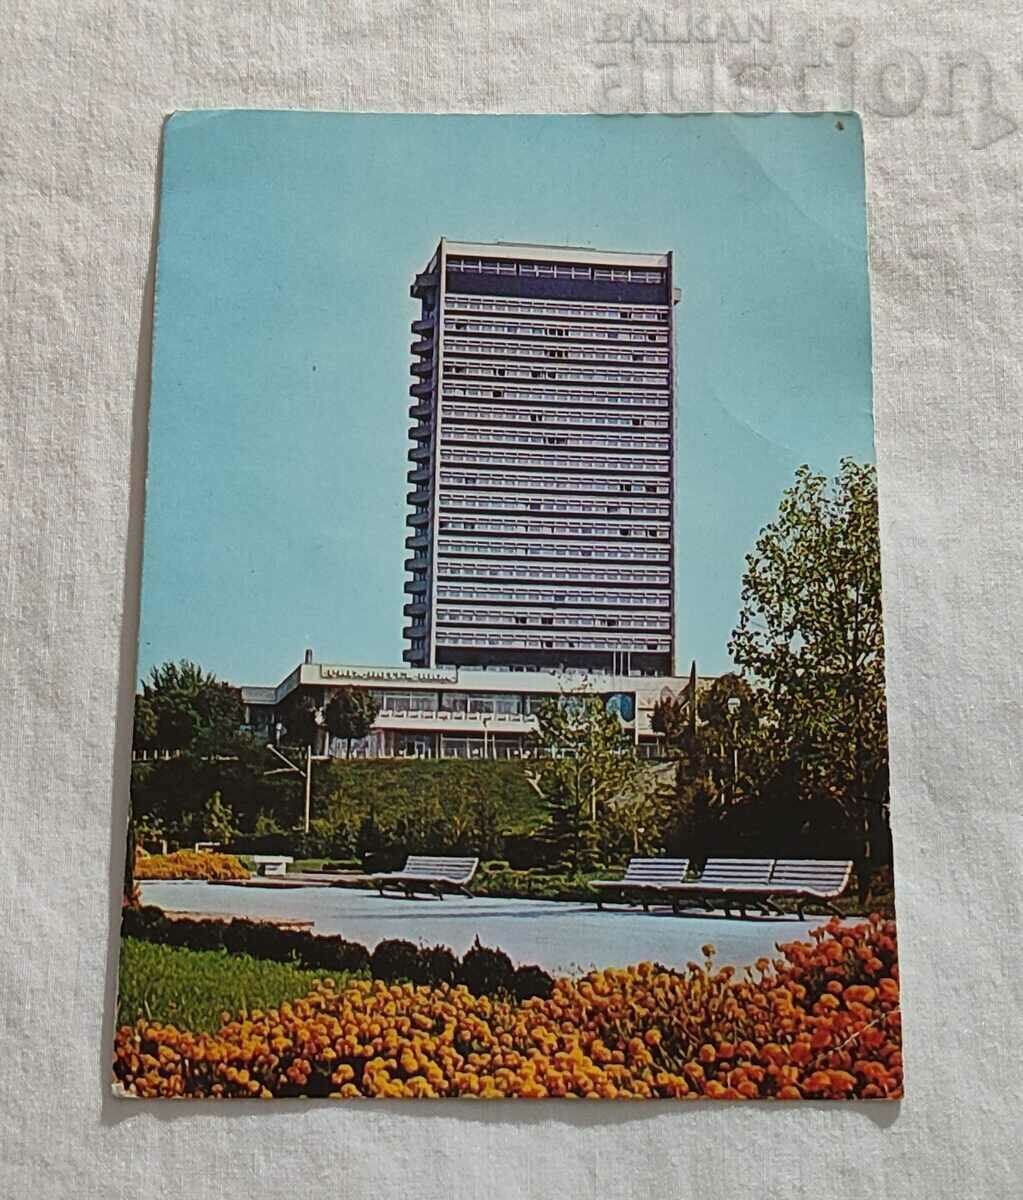 RUSE HOTEL RIGA Τ.Κ. 1980